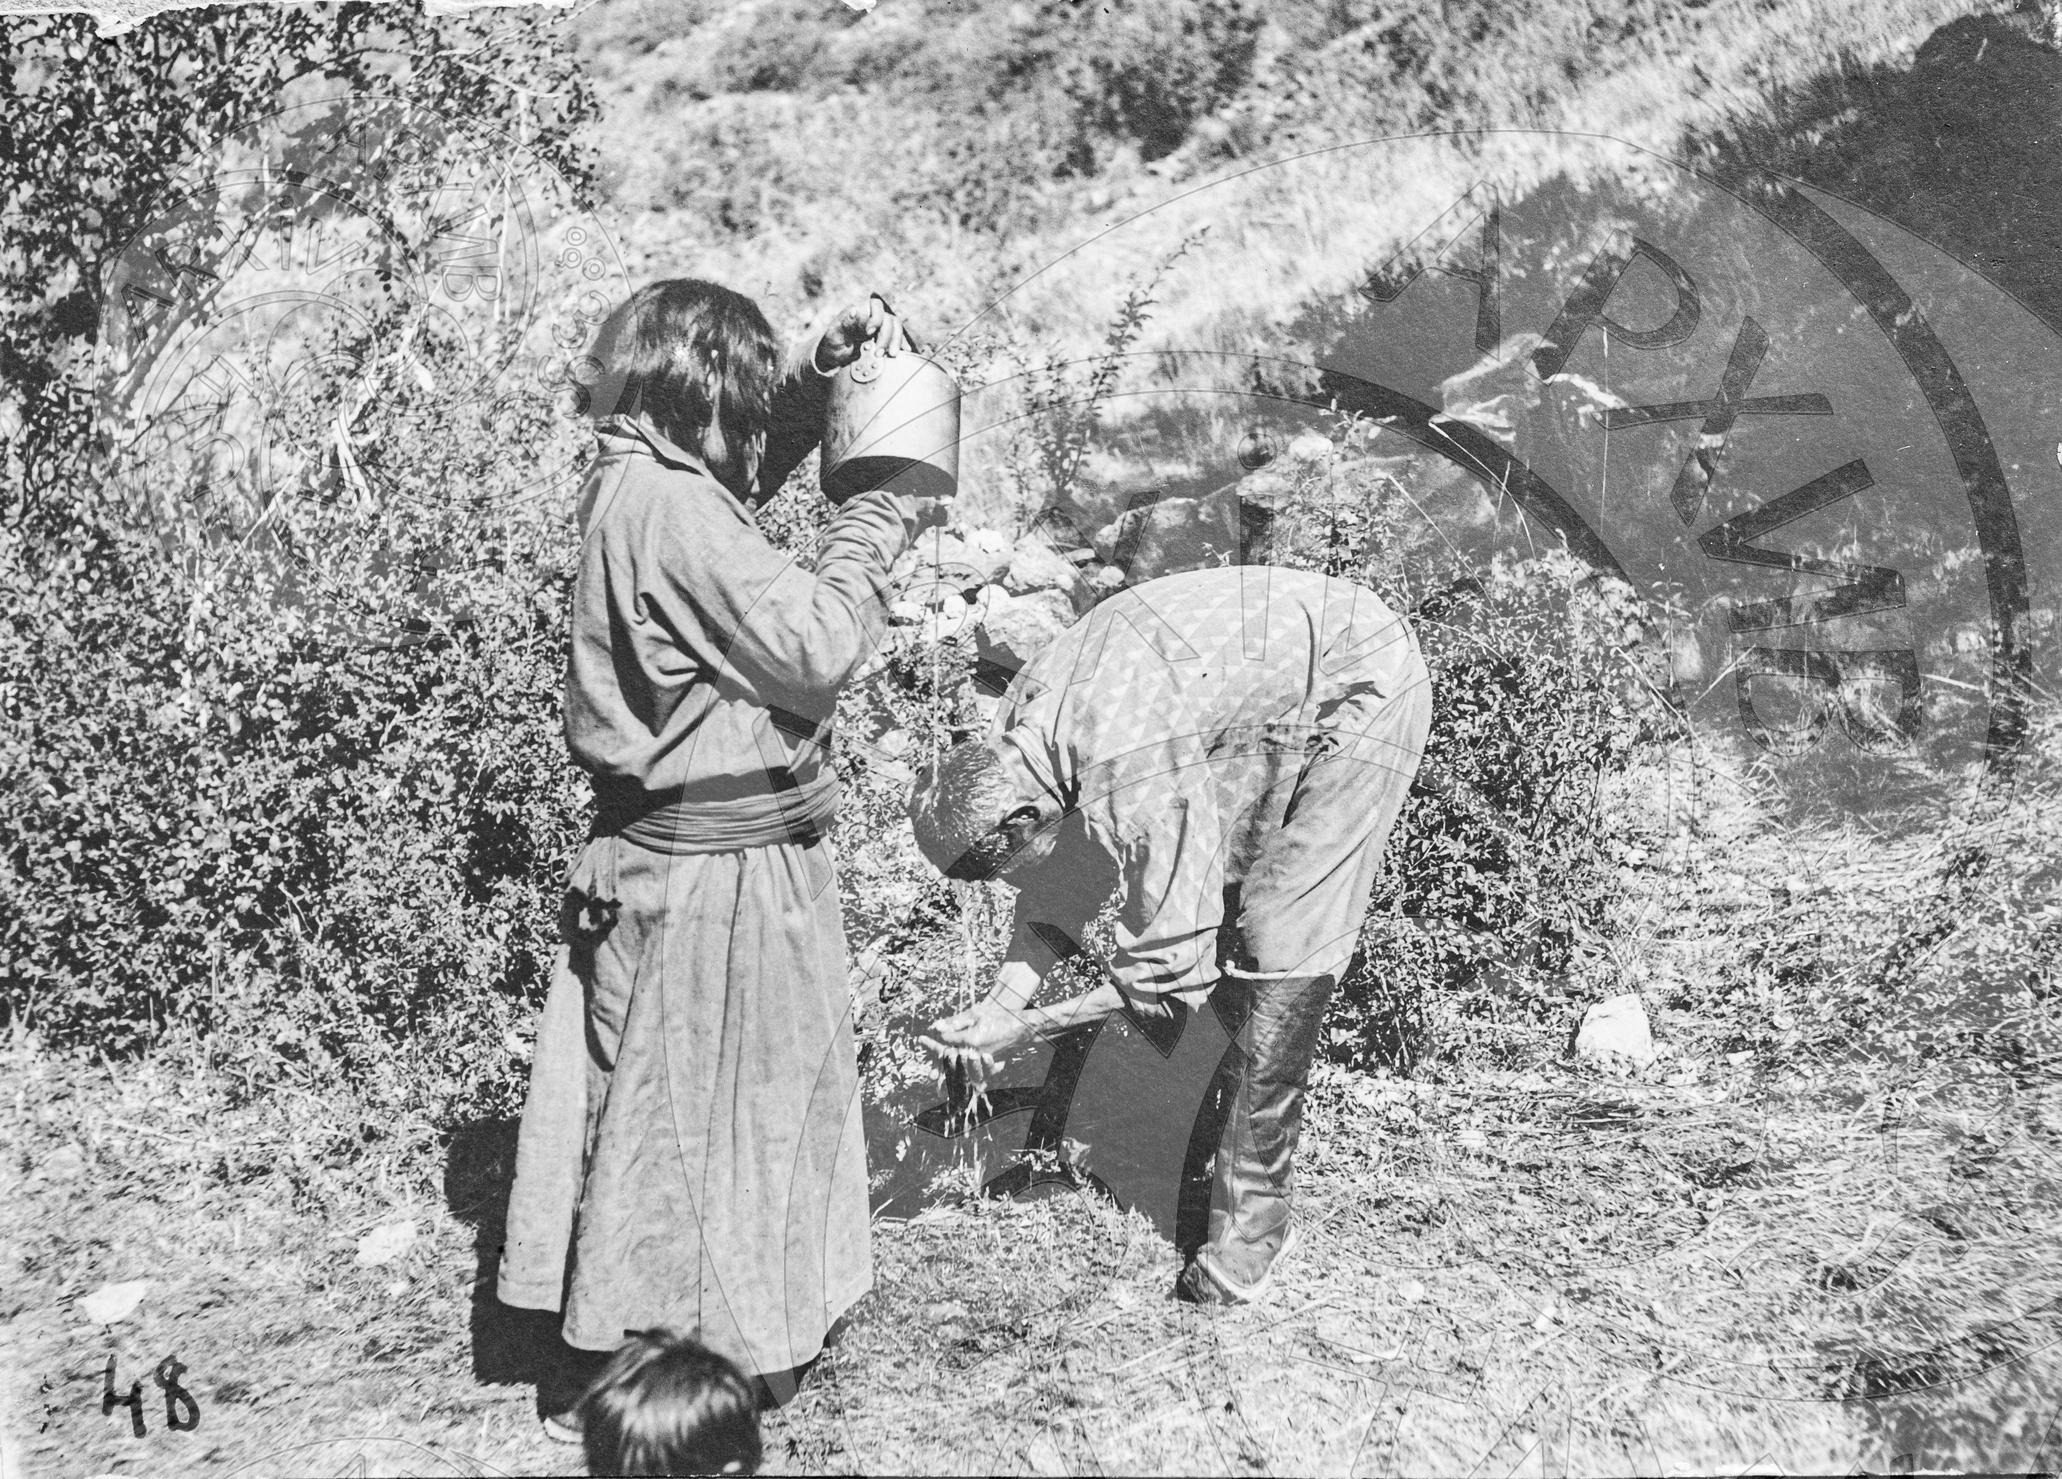 Один из способов лечения водой из Аржаана ( источника) близ Коктея ( жена поливает водой из чайника голову своего мужа)
